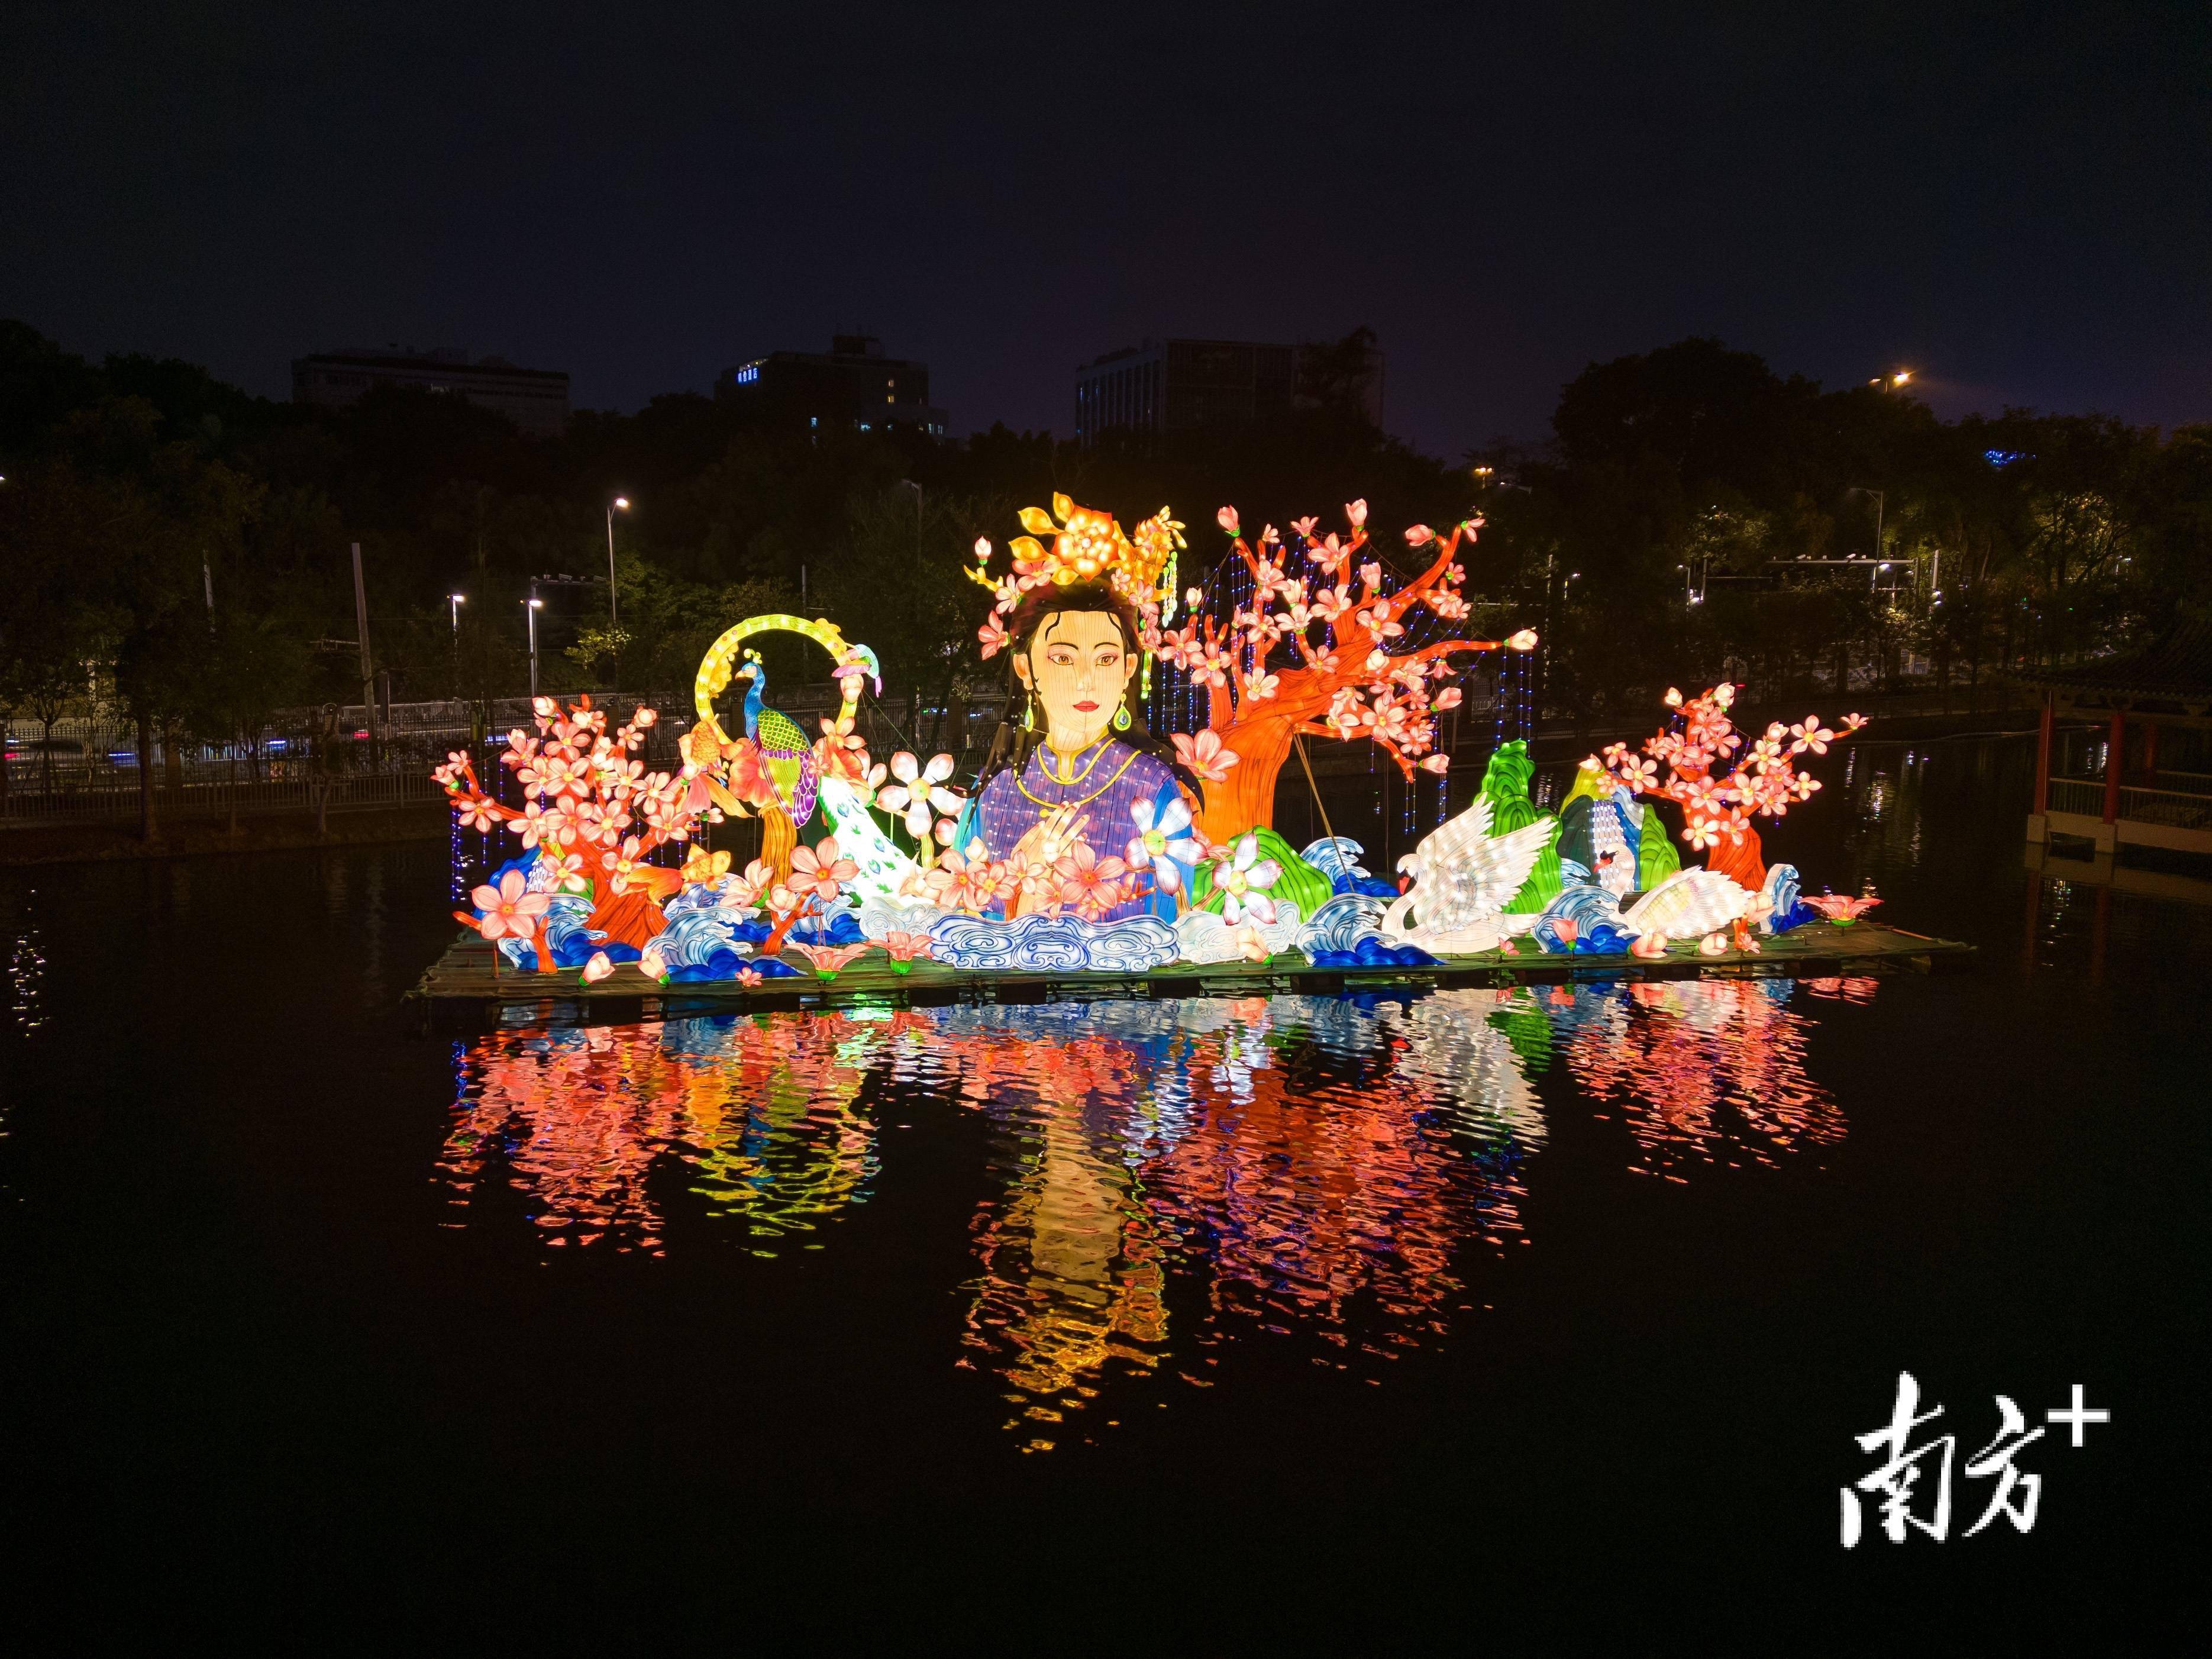 作为广州最大的新春花灯展,越秀公园新春灯会从2012年举办至今,刚好10